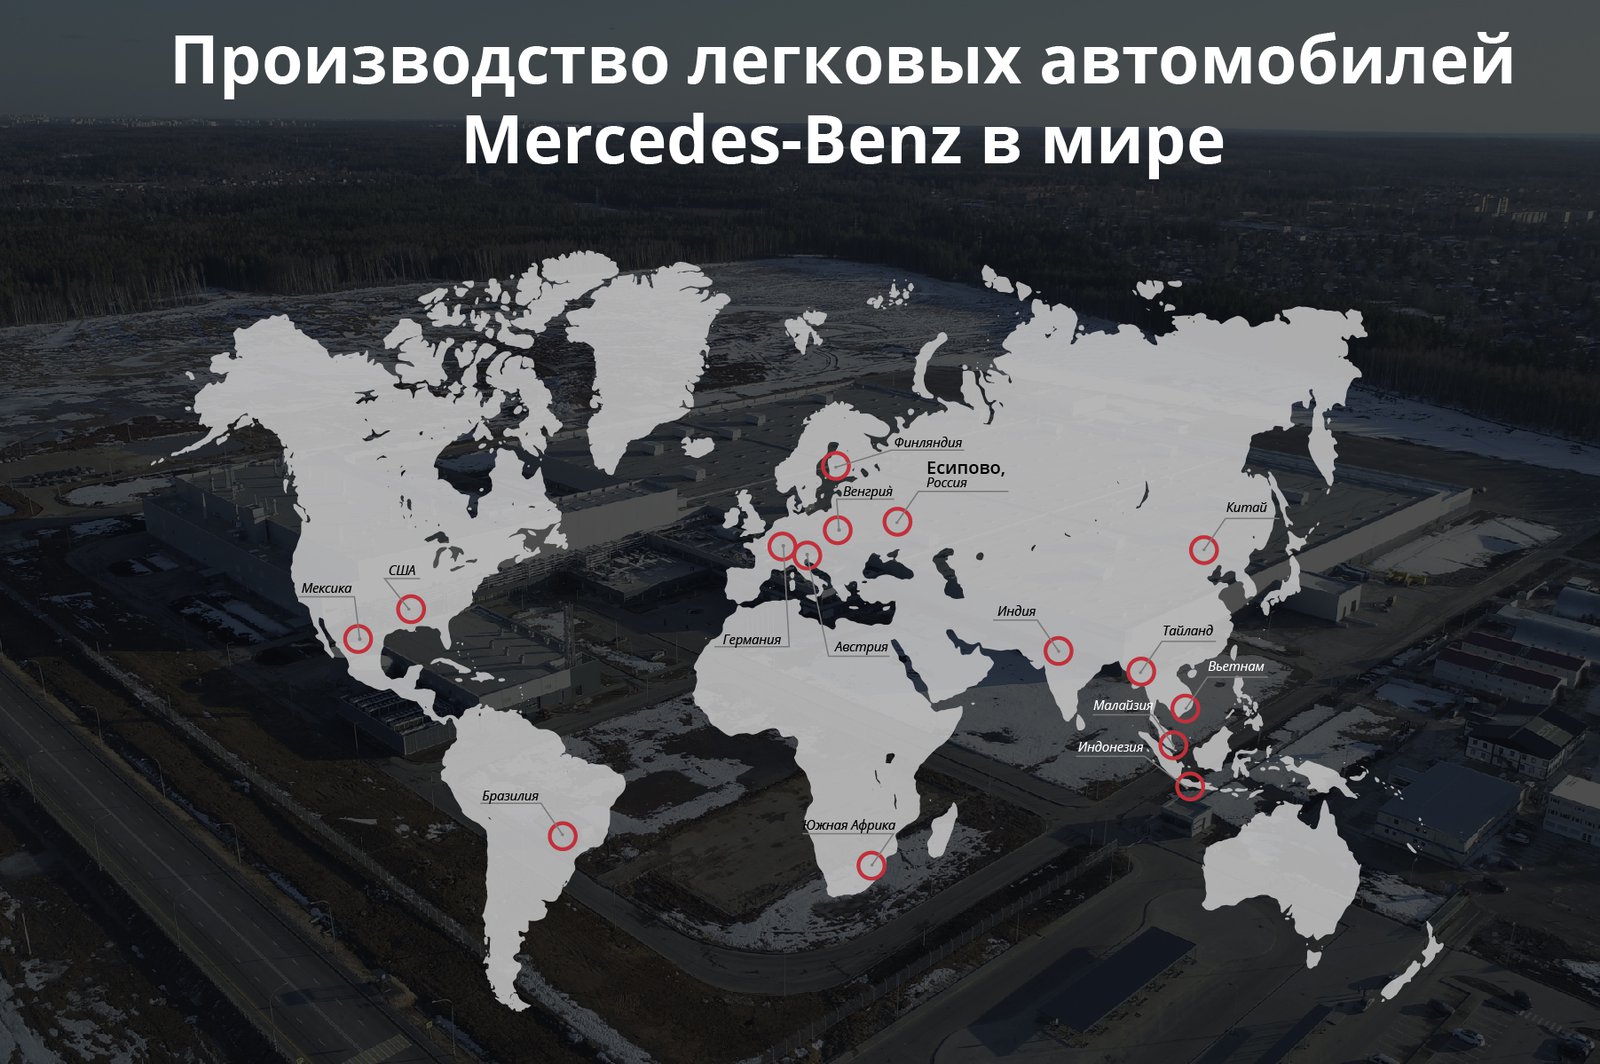 Андрей Воробьев губернатор московской области - Единственный в стране: первый в России завод Mercedes-Benz открылся в Подмосковье